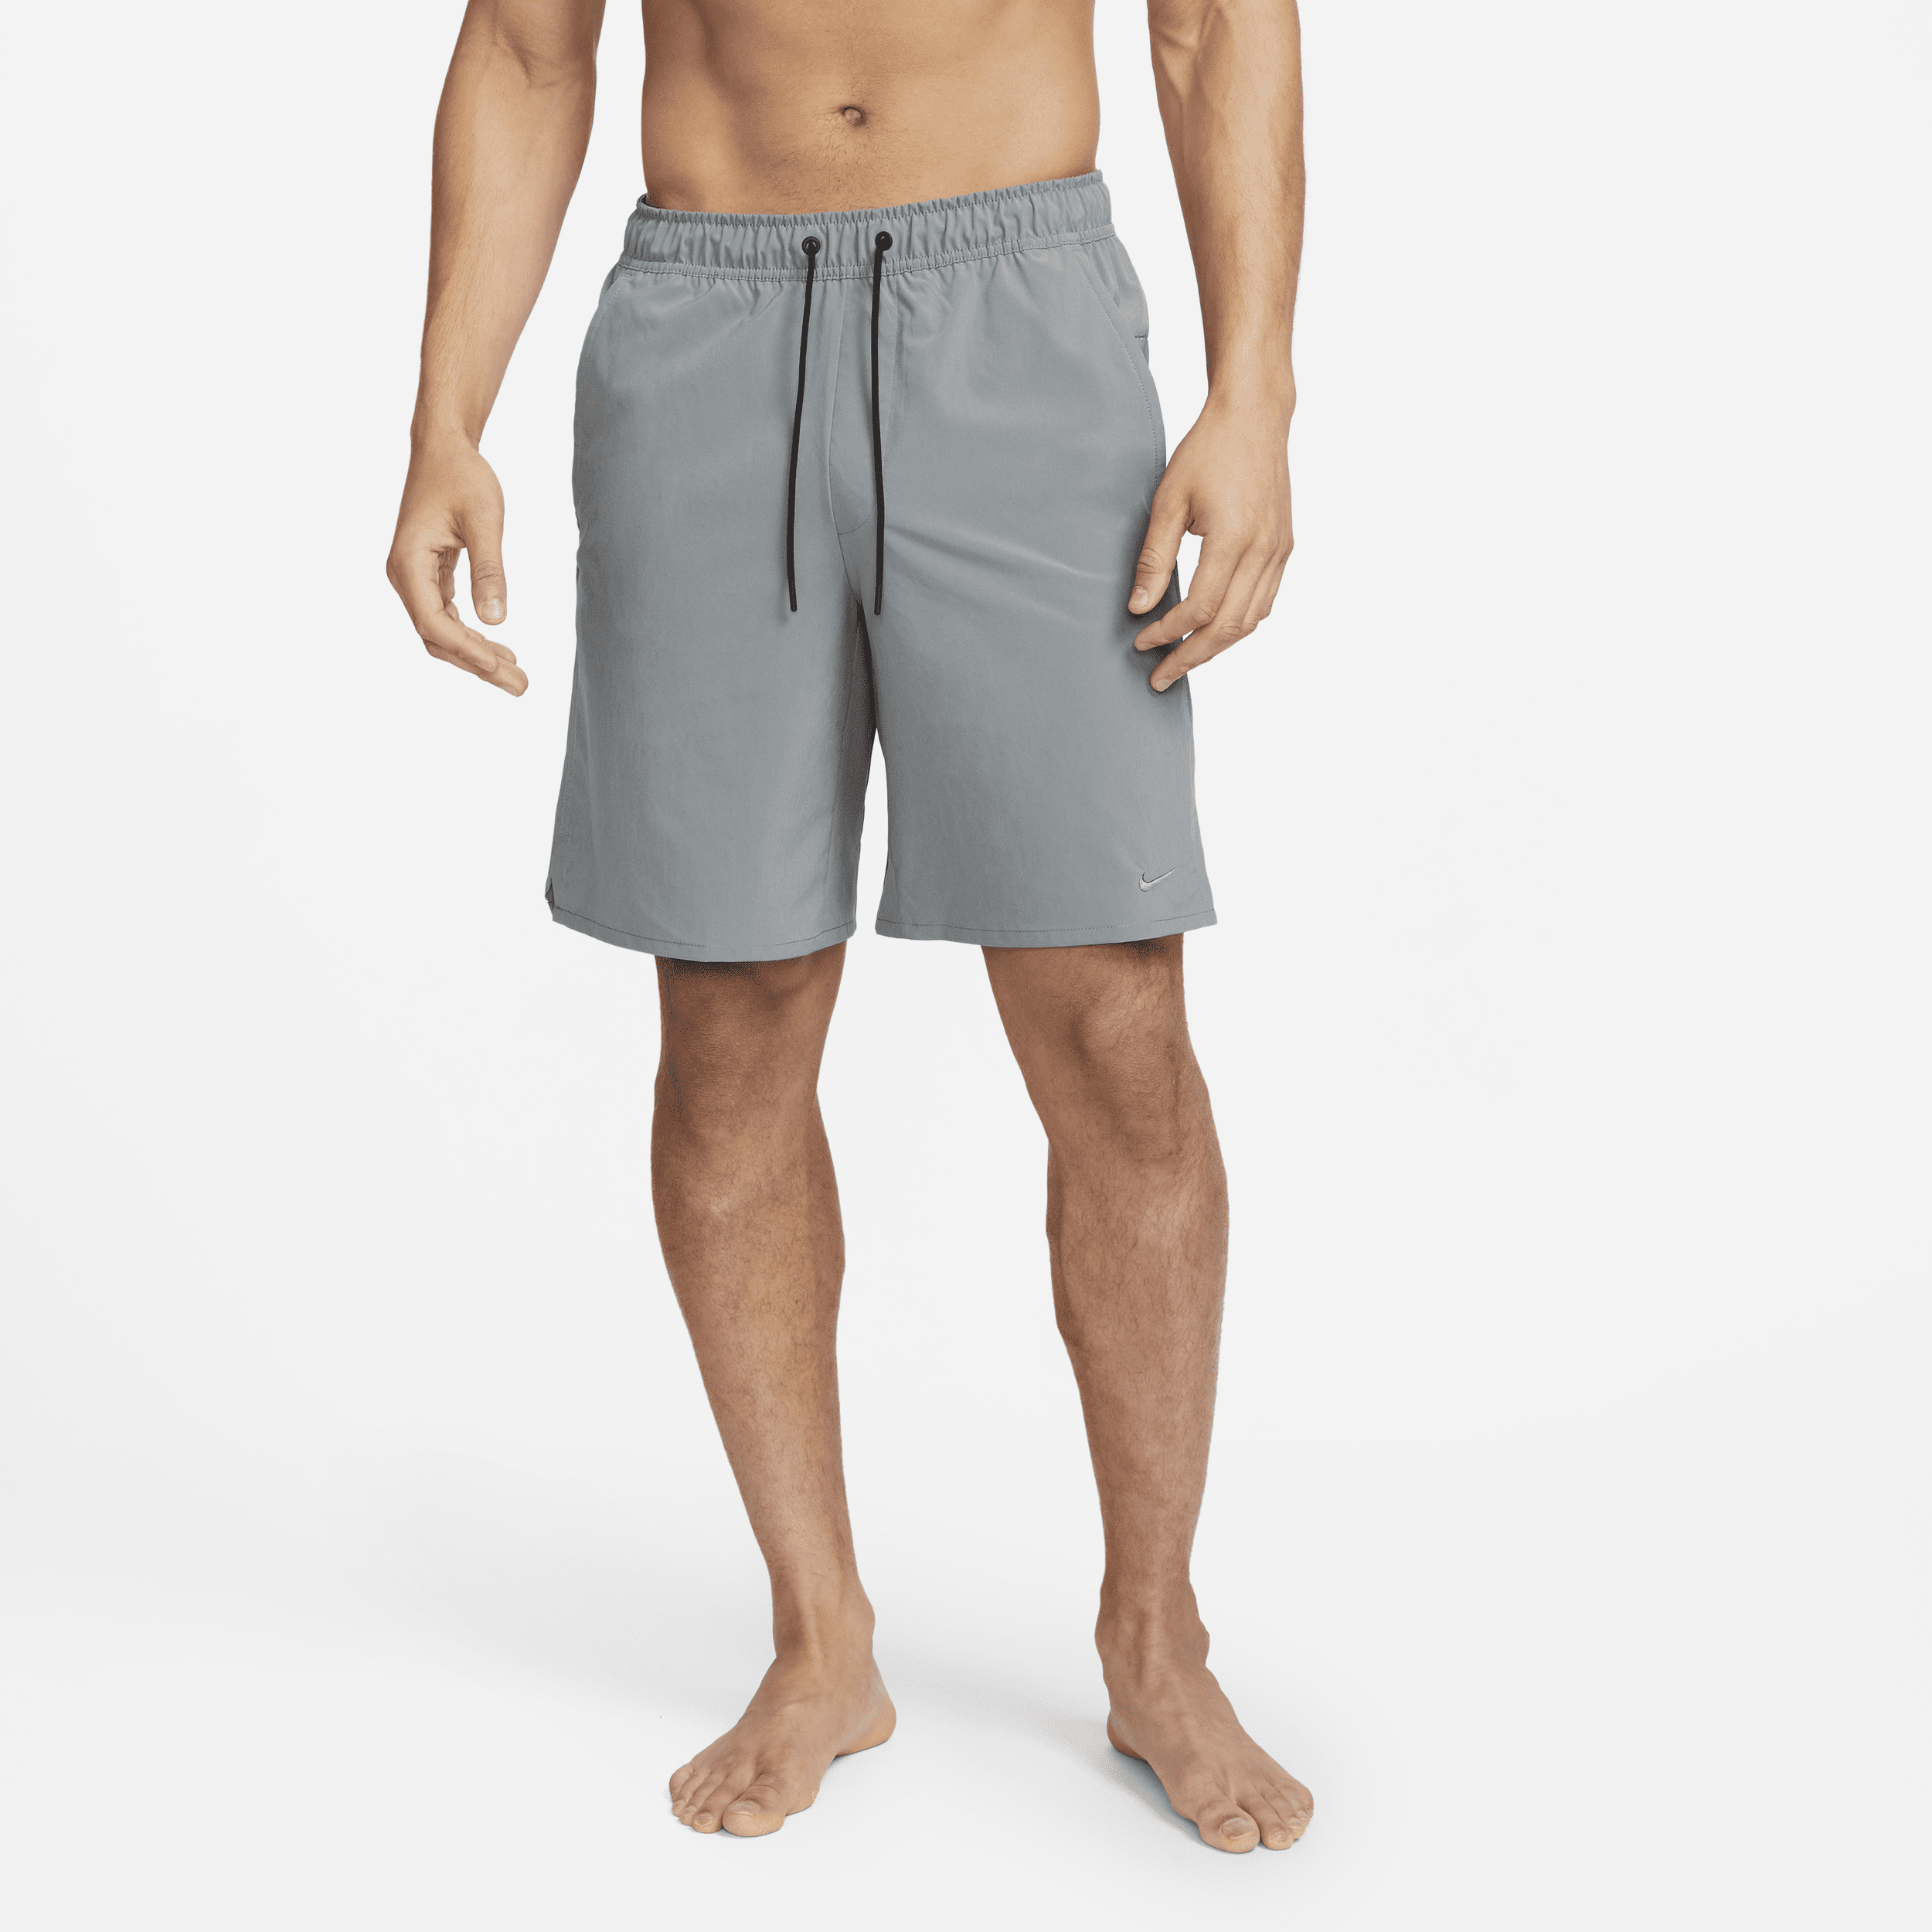 Shorts versatili non foderati Dri-FIT 23 cm Nike Unlimited – Uomo - Grigio